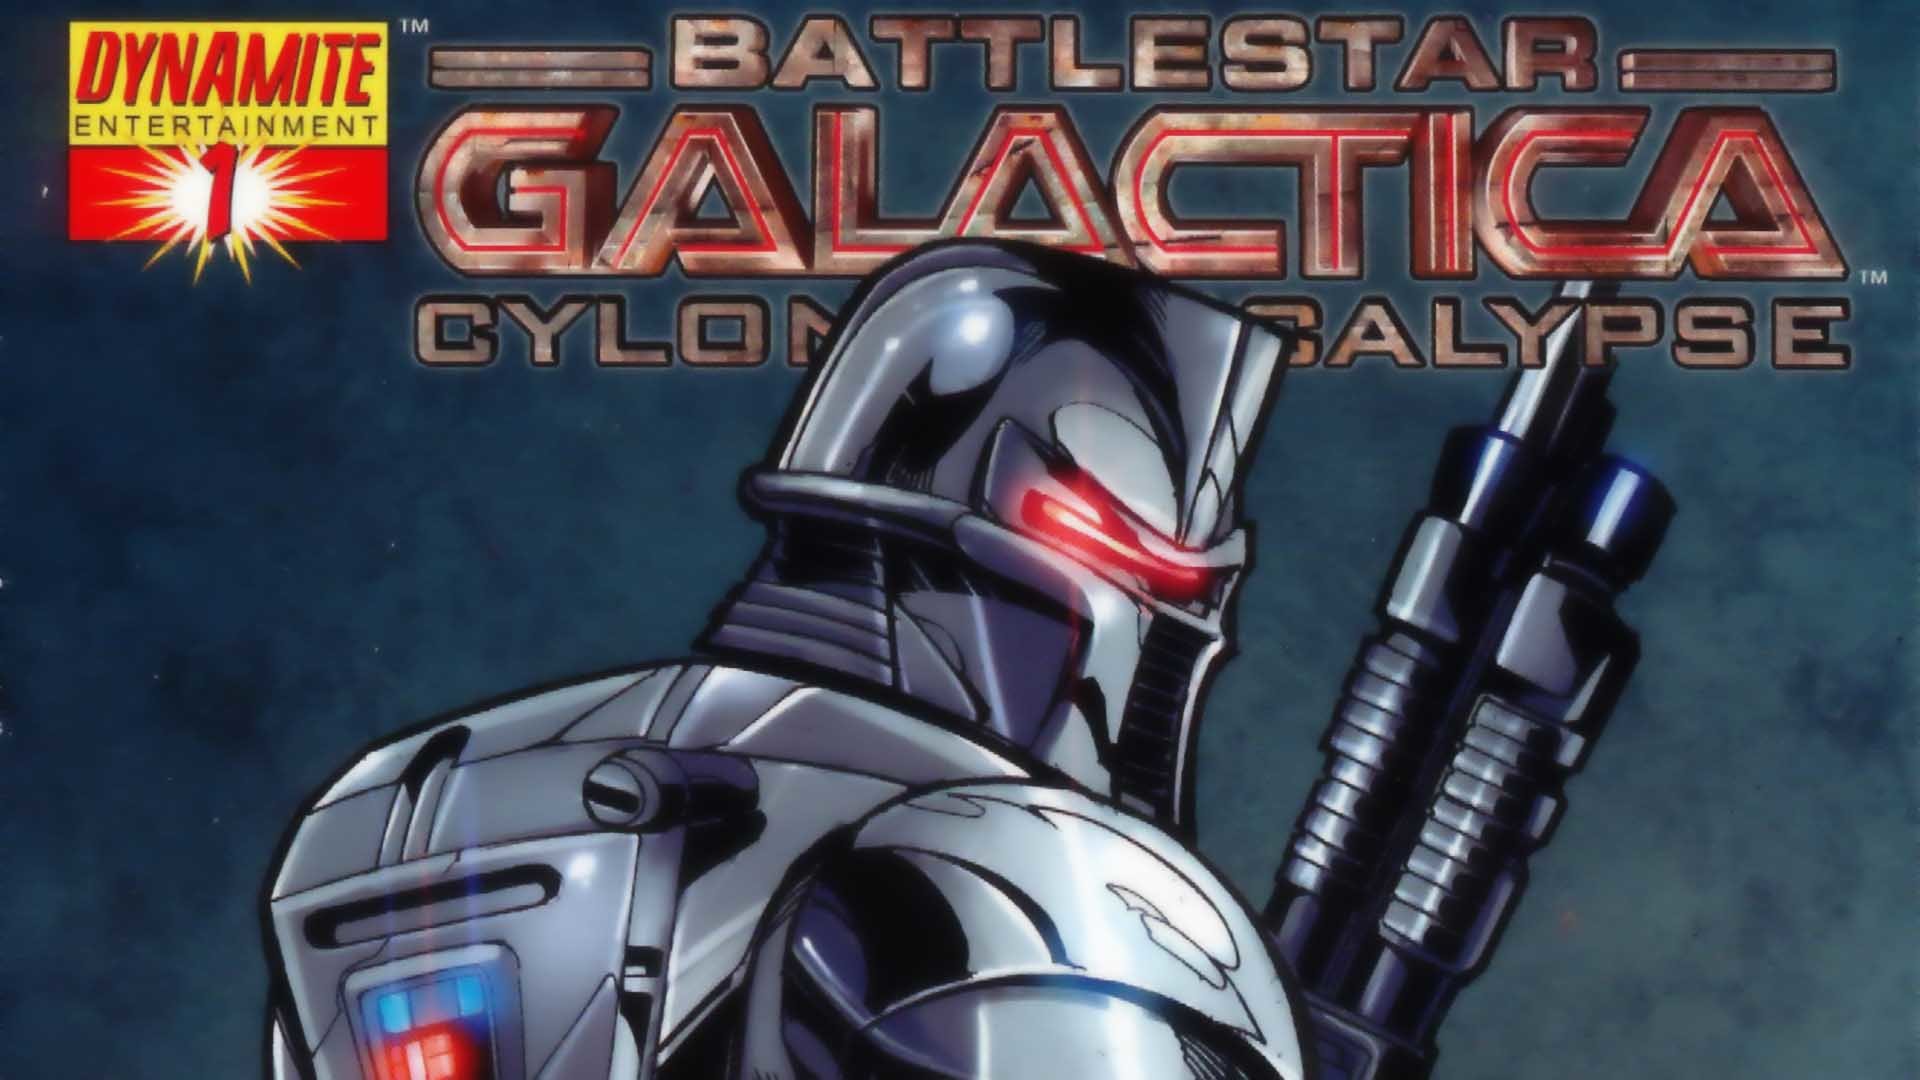 Best Battlestar Galactica comics background ID:250292 for High Resolution full hd 1080p desktop